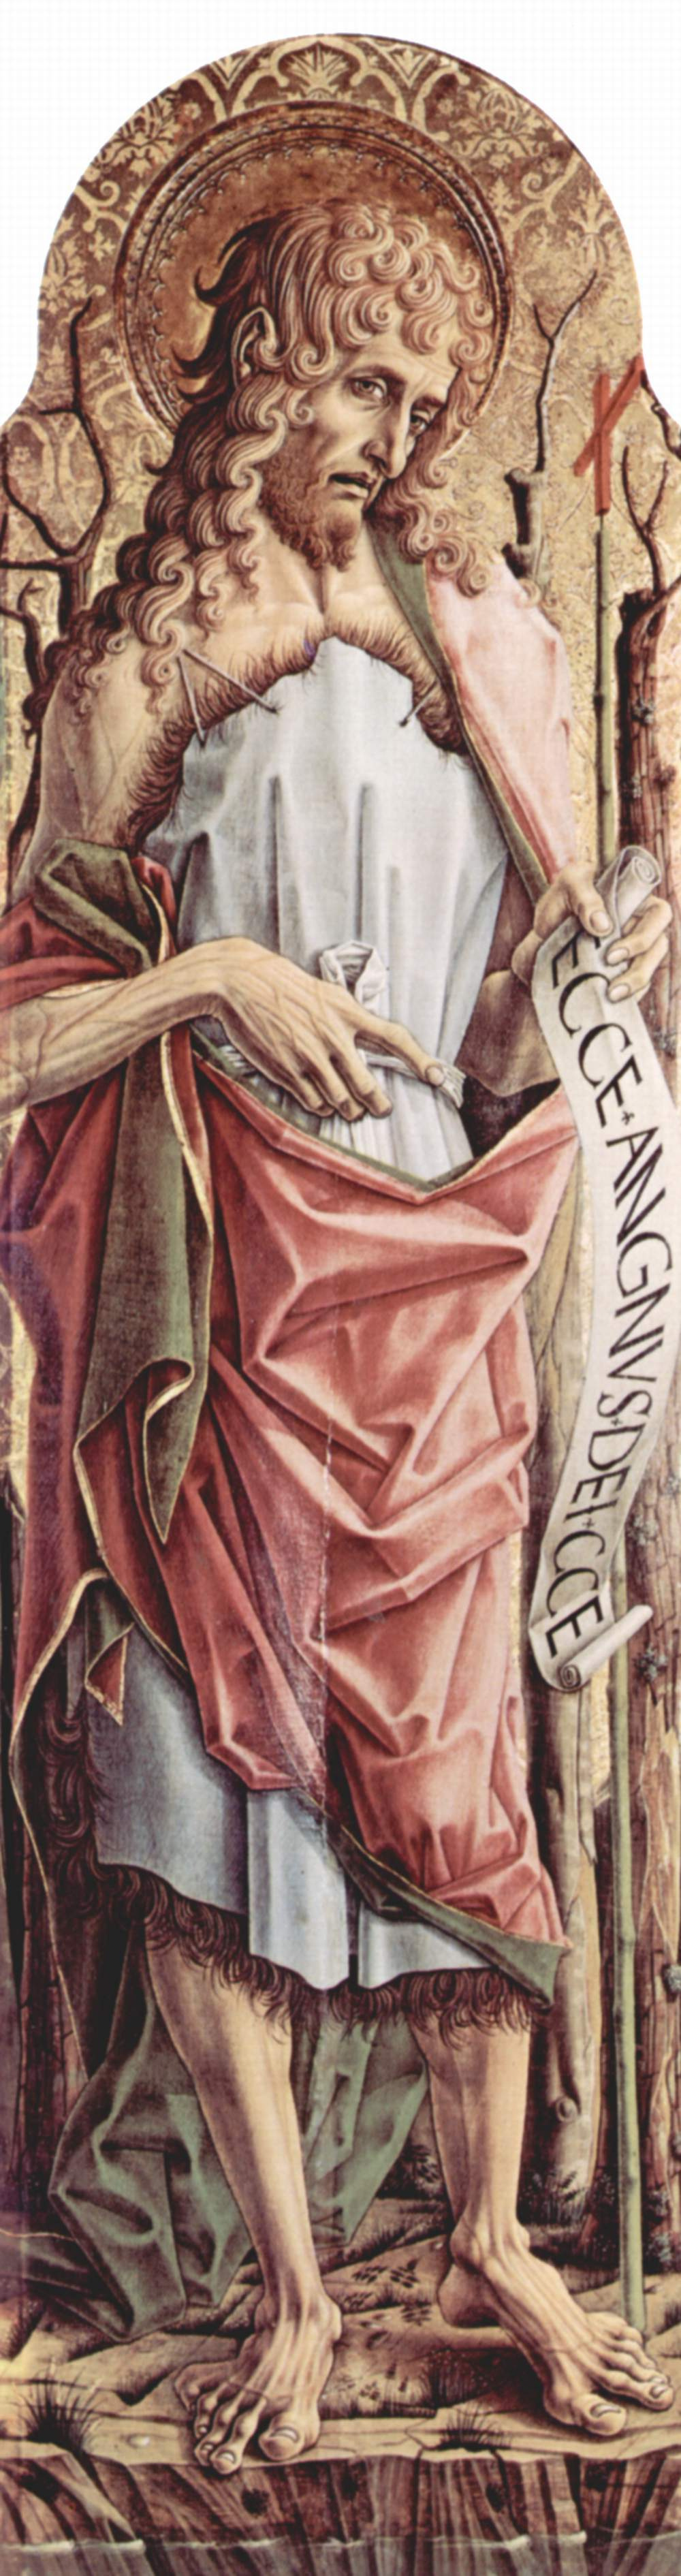 Карло Кривелли. Иоанн Креститель. Центральный алтарь кафедрального собора в Асколи, полиптих, левая створка, внутренняя сторона